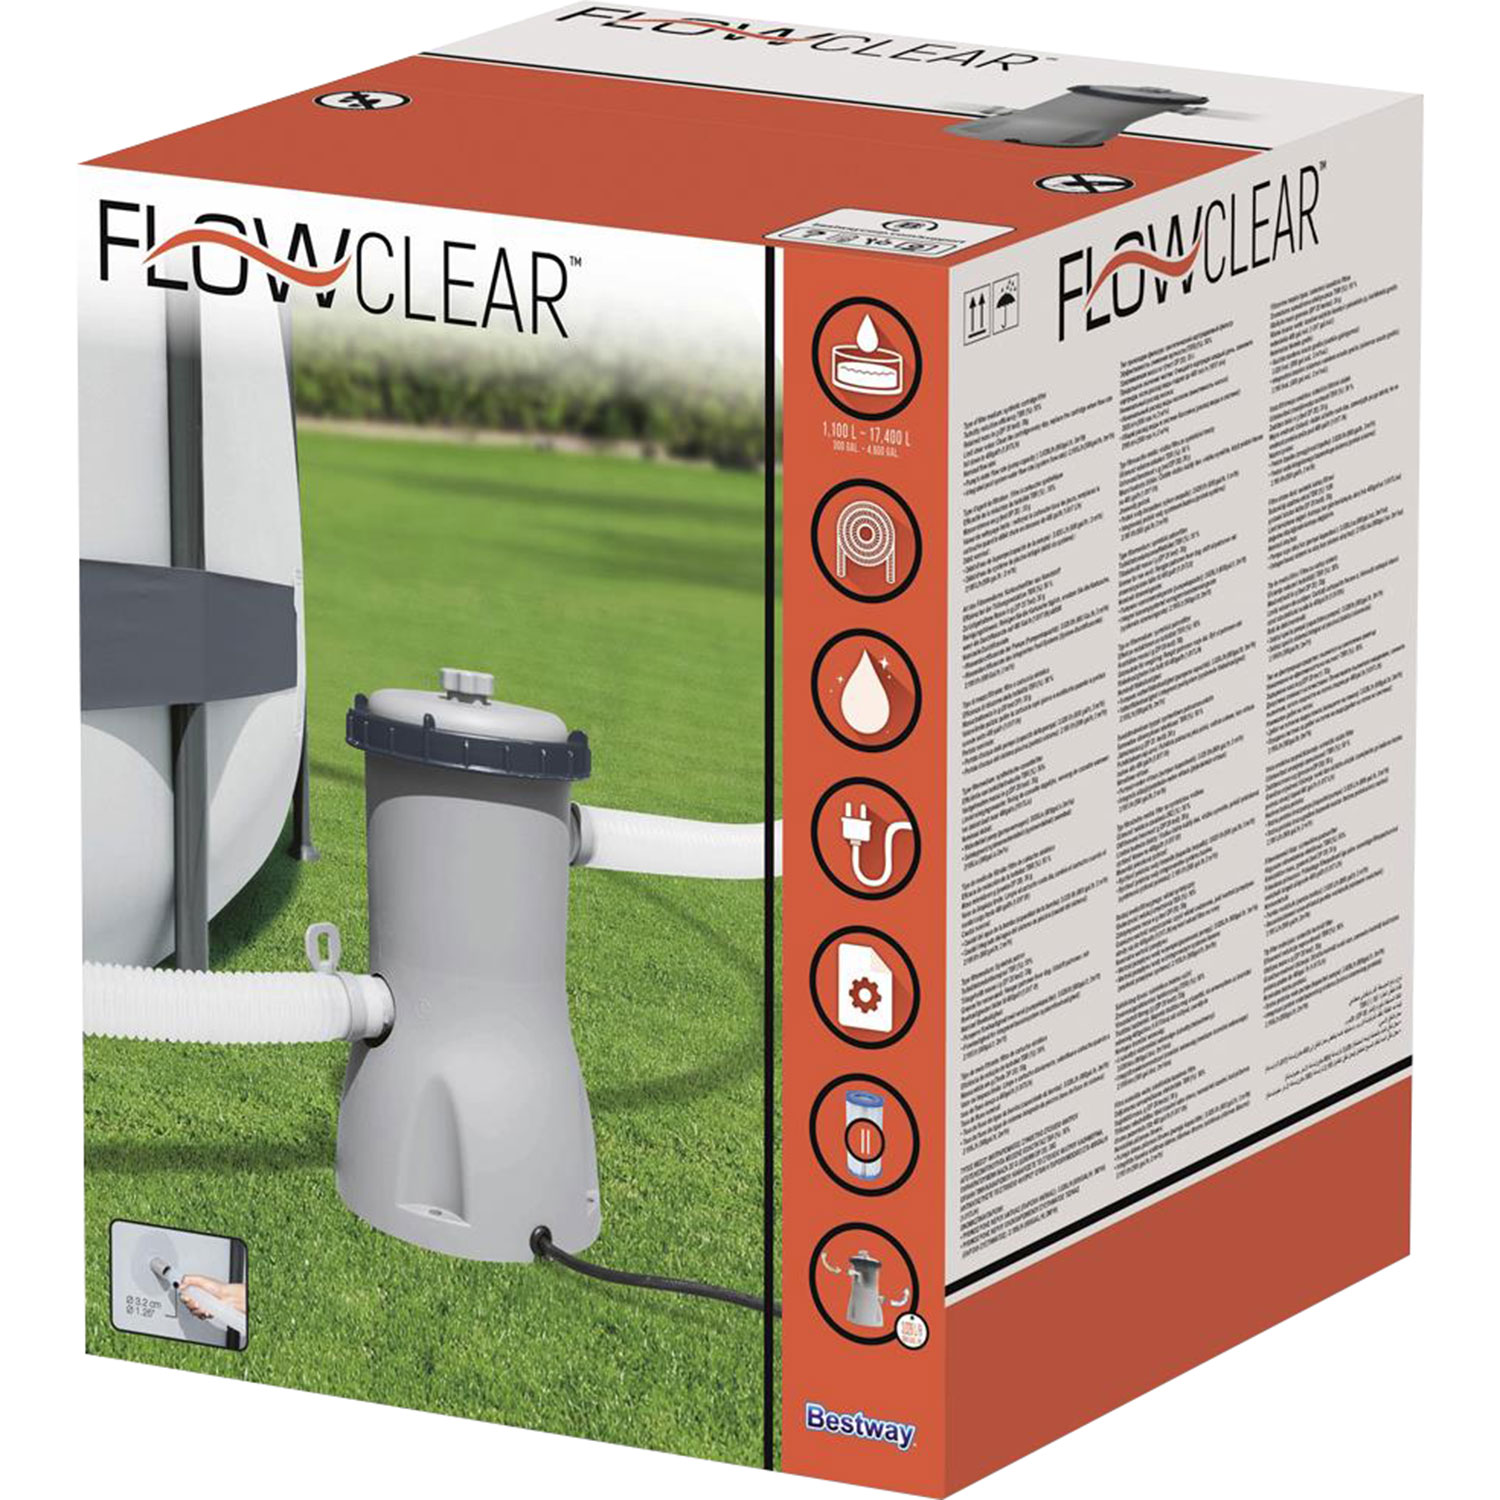 Bestway Flowclear pool filter pump 3028 ltr/hour